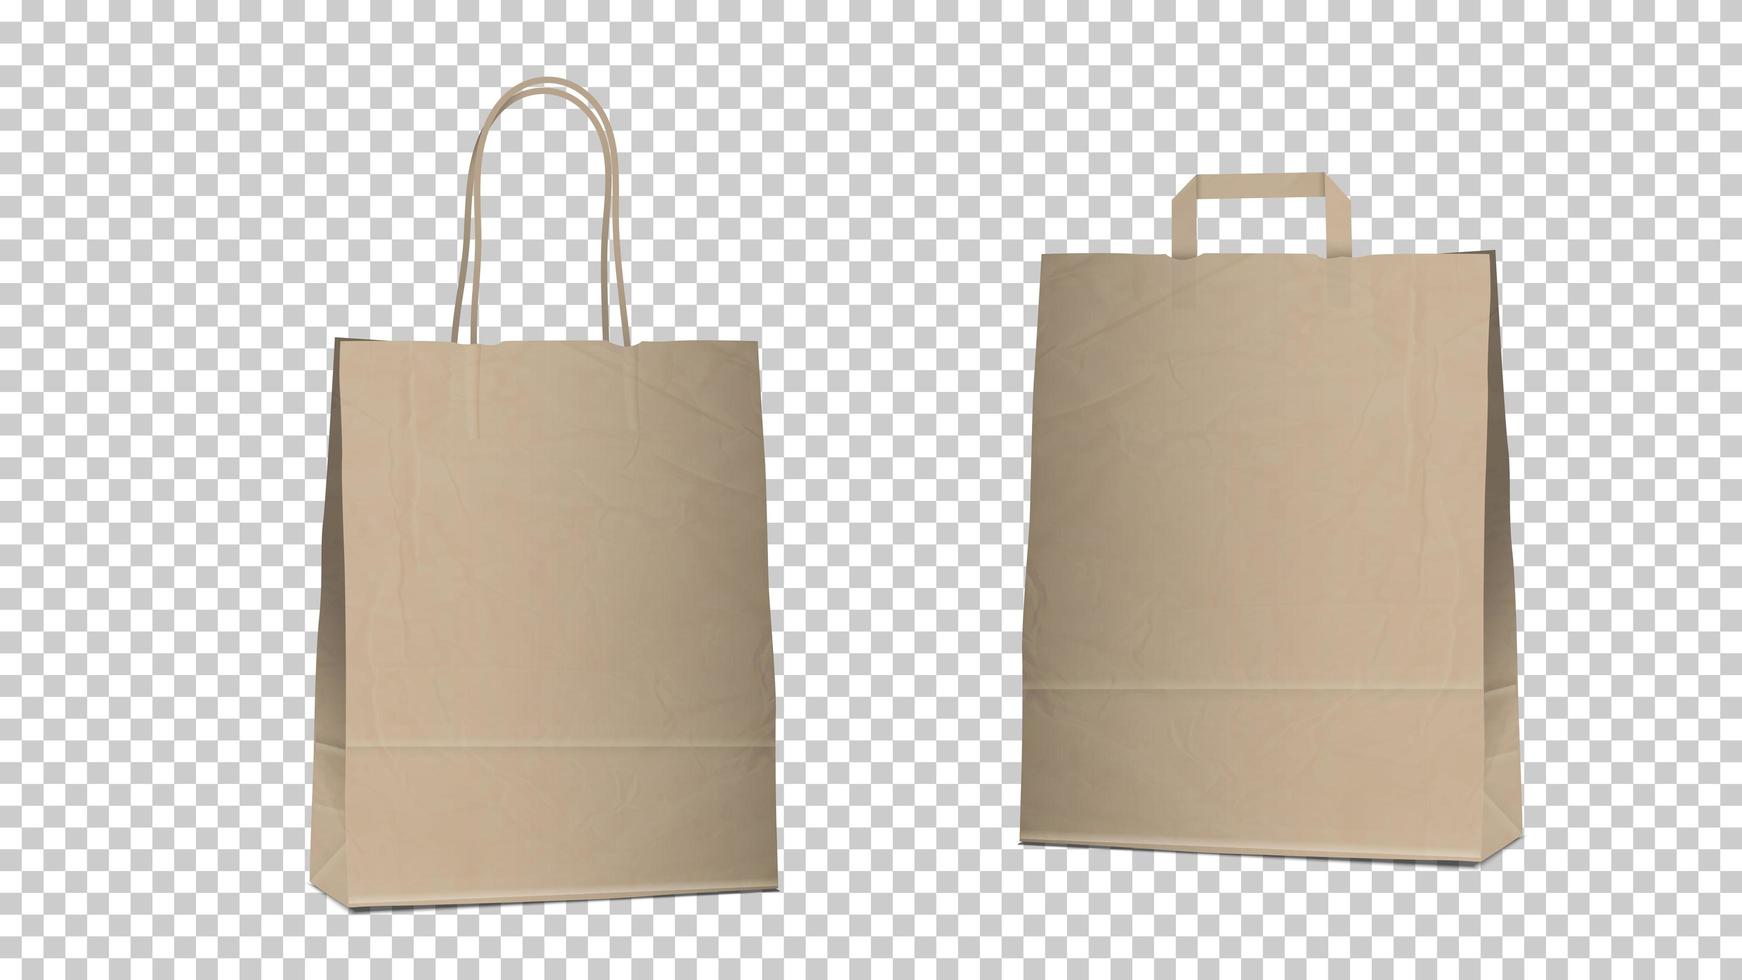 Compras bolsas vacías aisladas, dos diferentes bolsas de papel marrón reciclable en blanco con asas para embalaje y compras vector